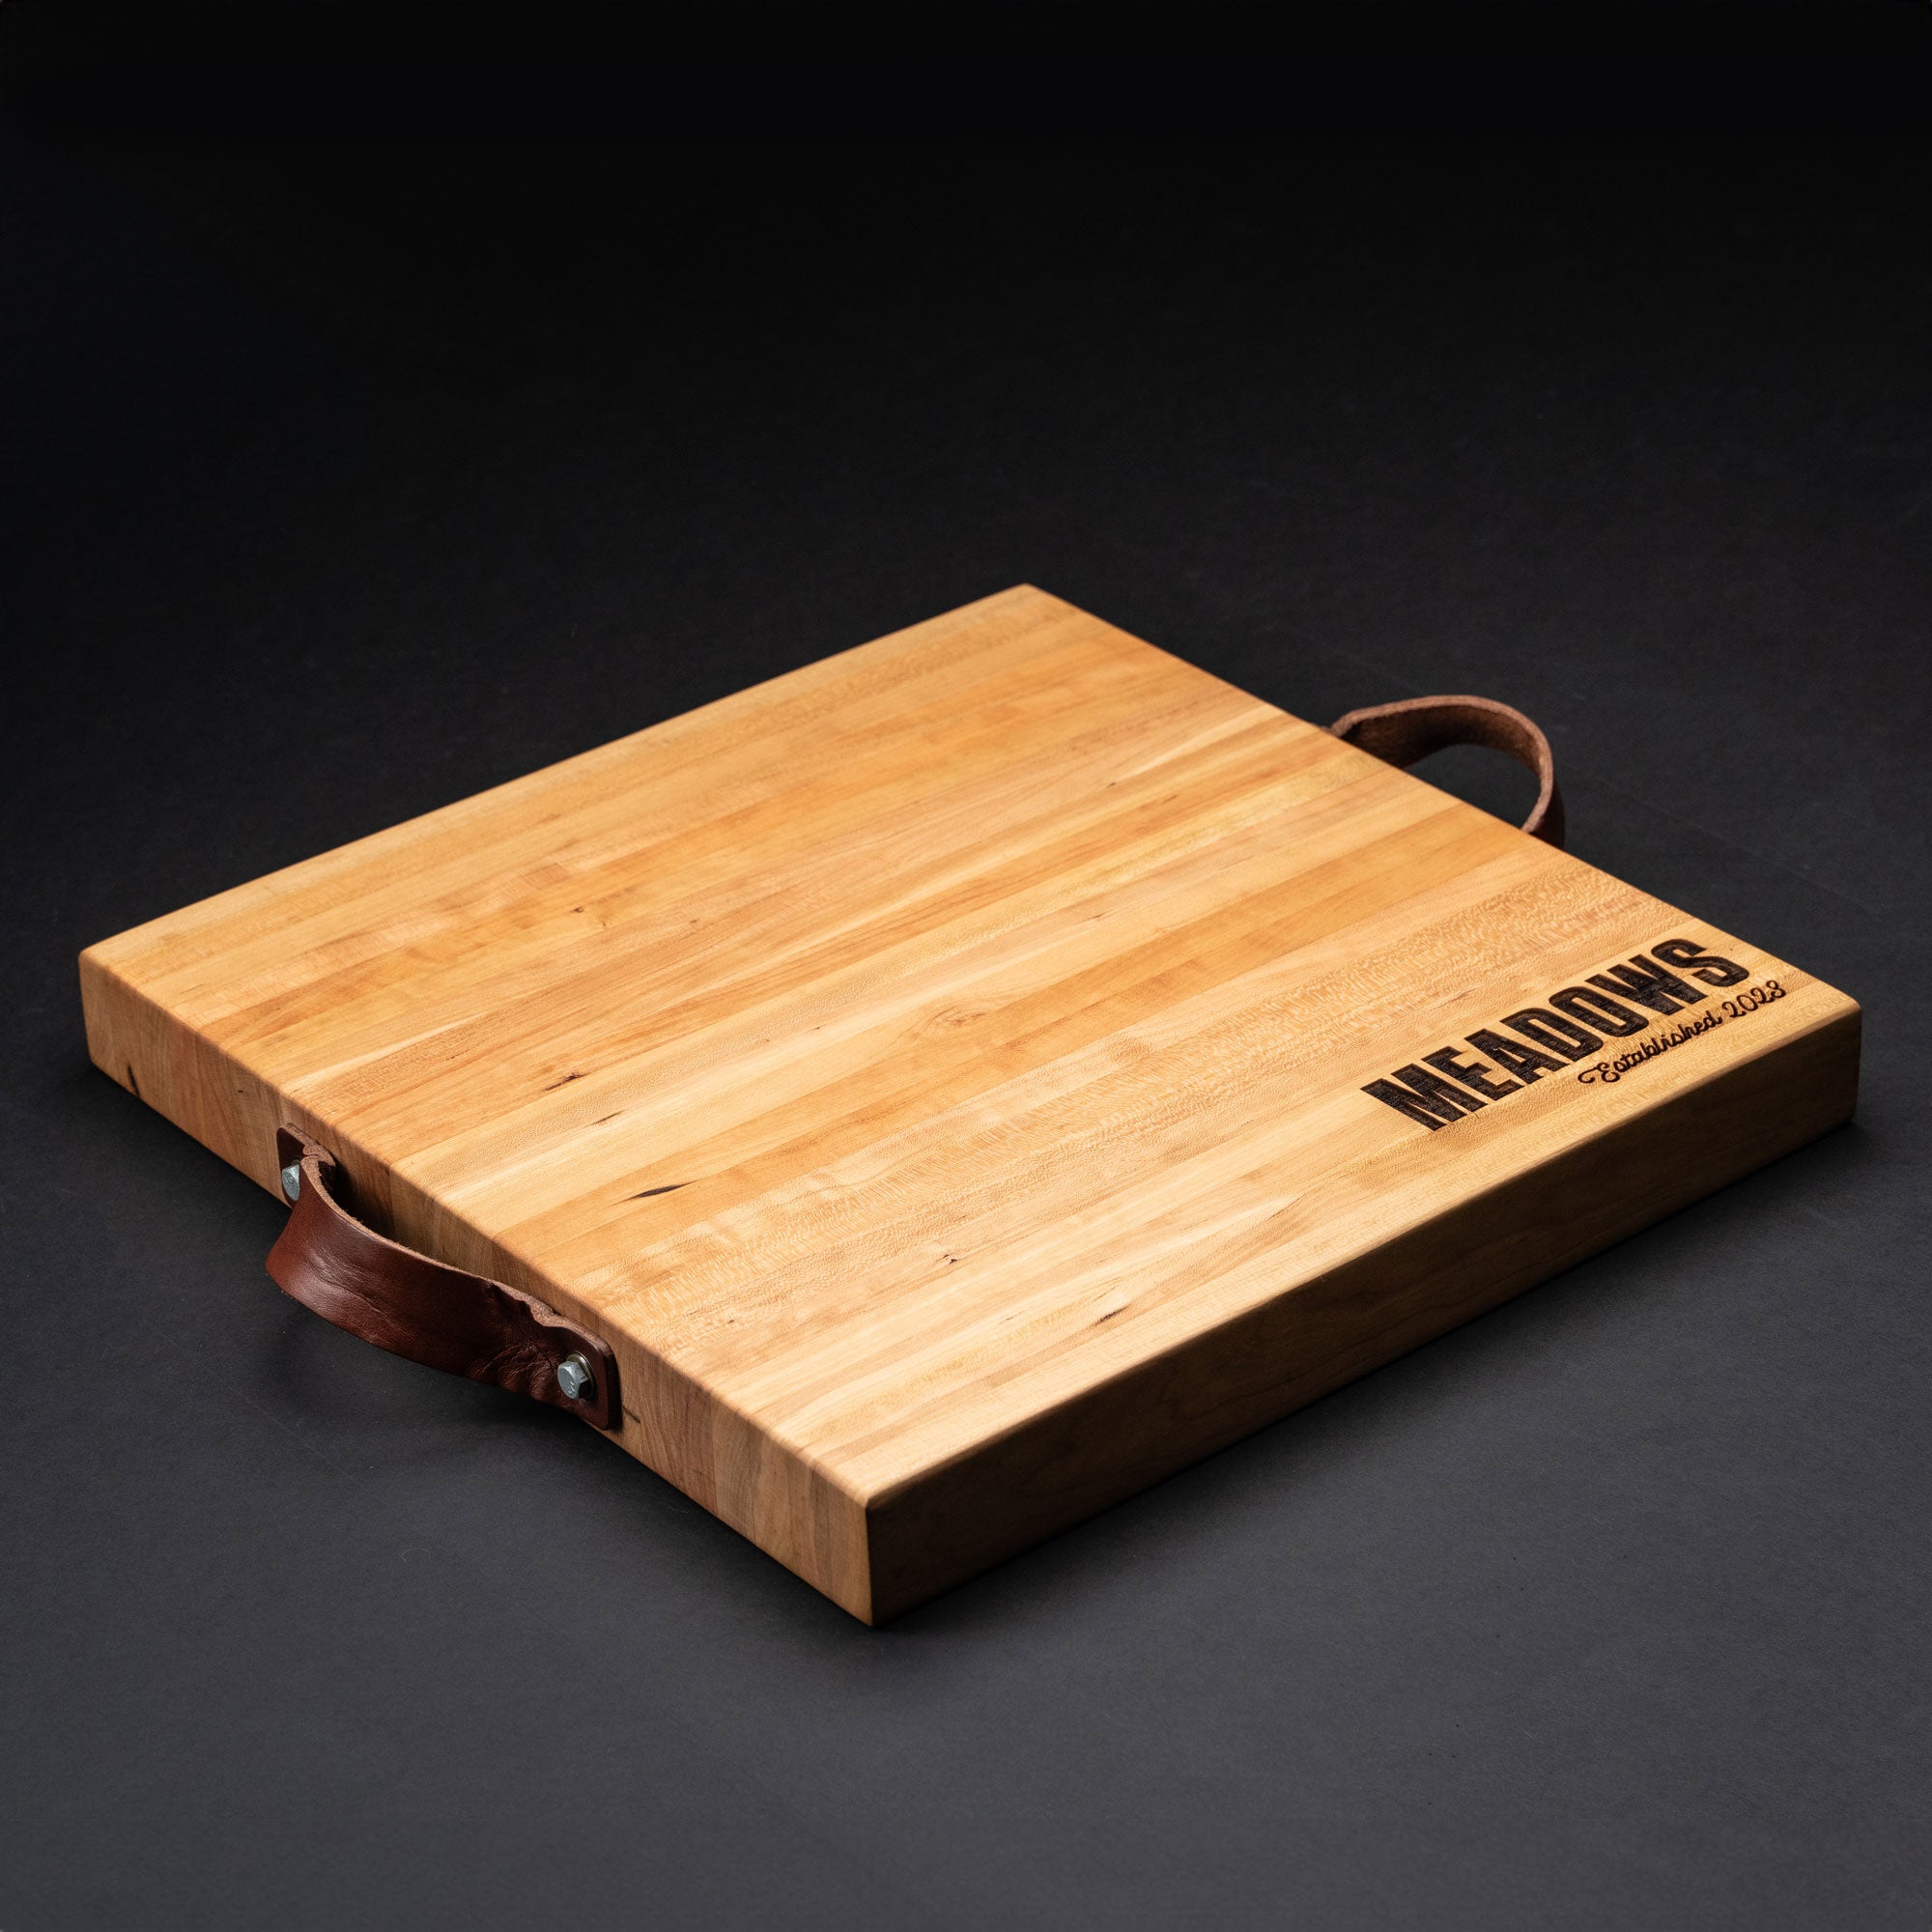  Medium Wood Cutting Board from American Cherry - A